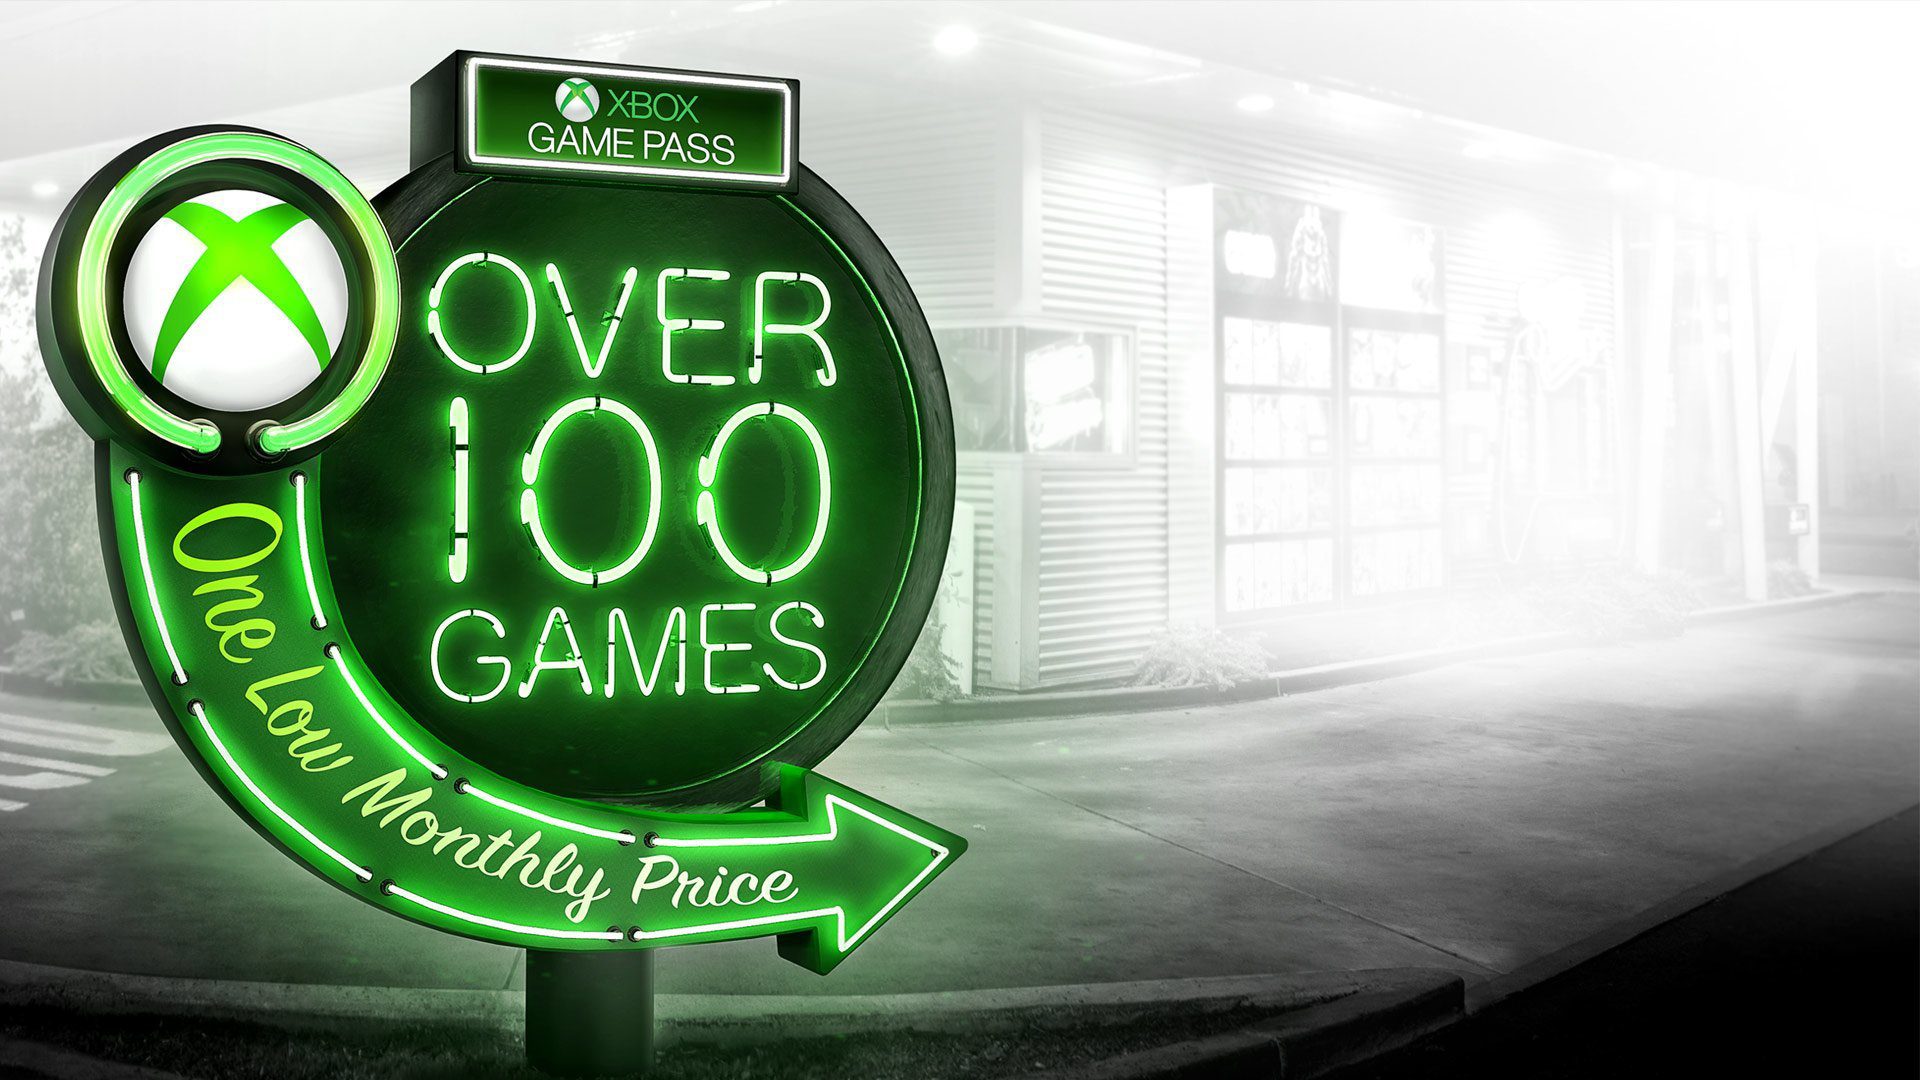 15 weitere Spiele kommen bald zum Xbox Game Pass! Werfen wir einen Blick auf die neuen Artikel im Service 59